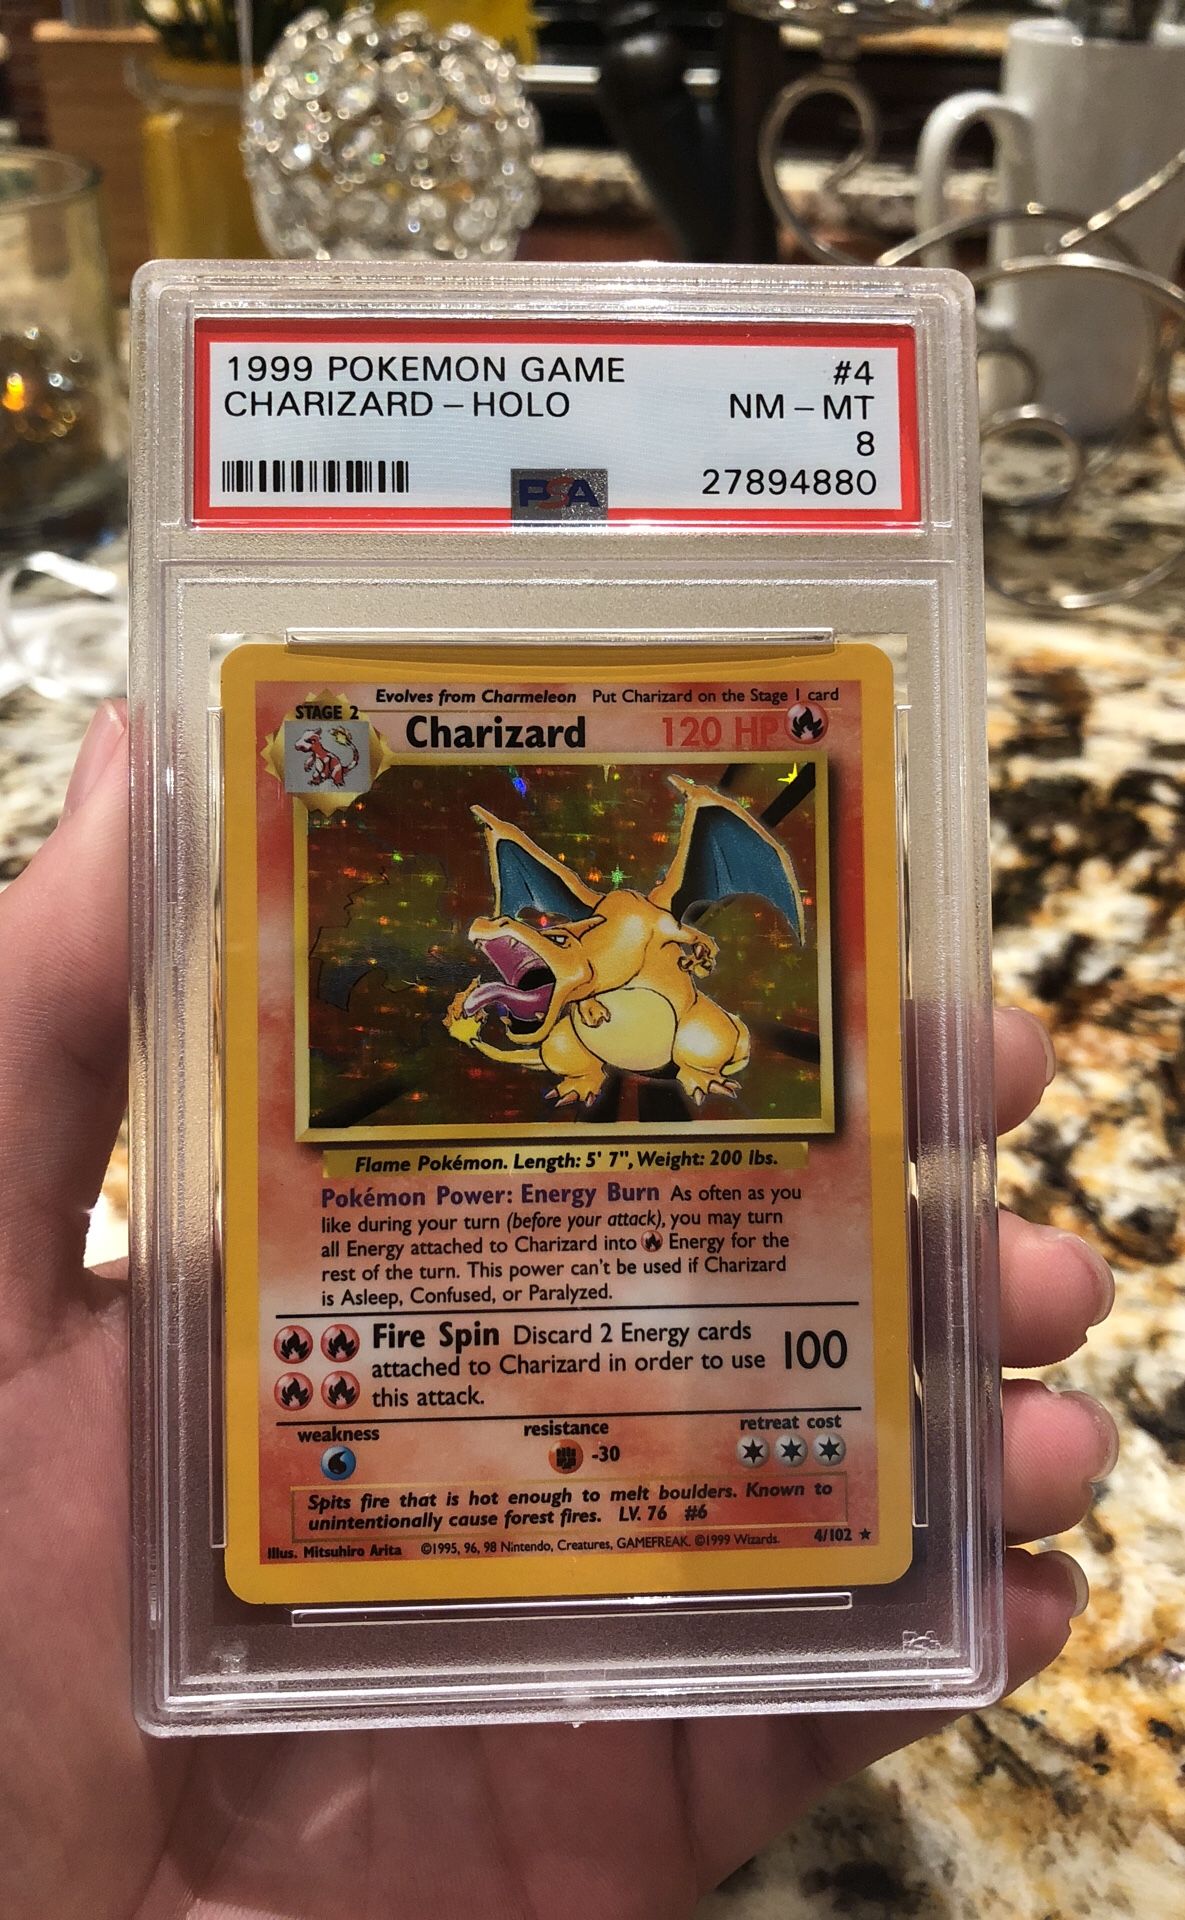 1999 Charizard pokemon card